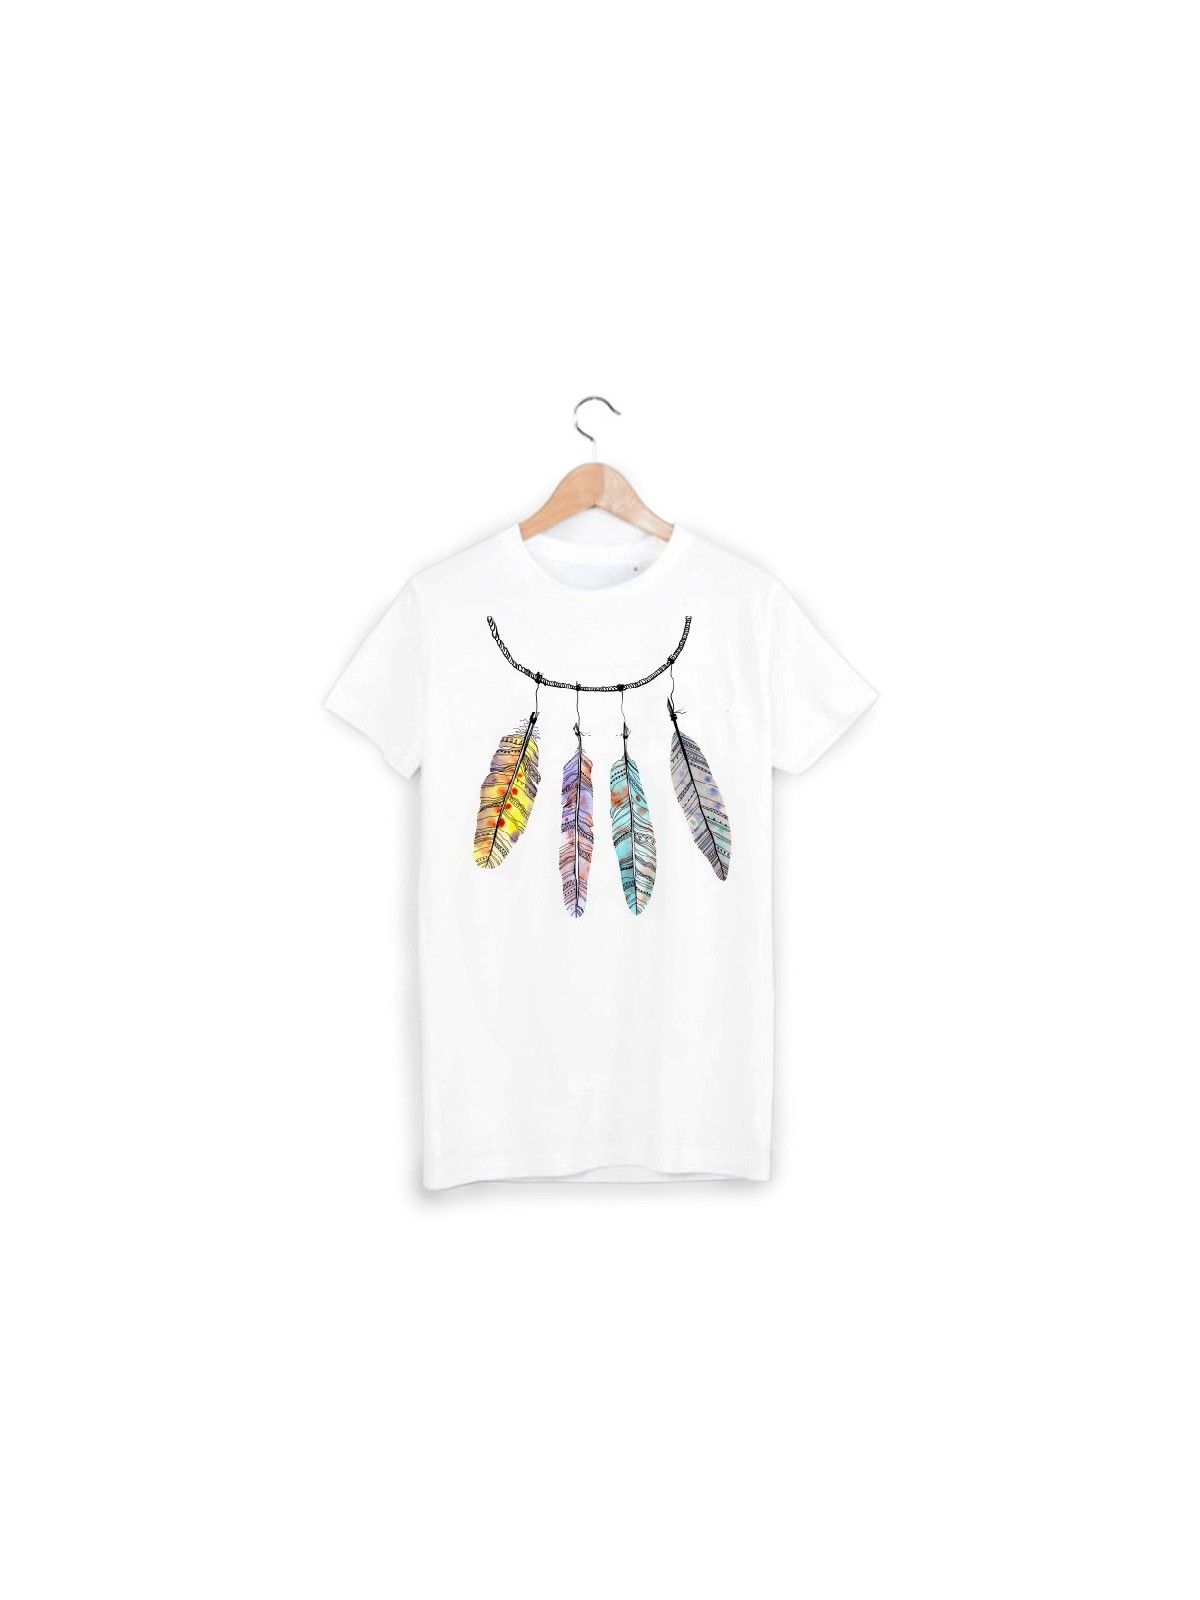 T-Shirt plume hippie ref 937